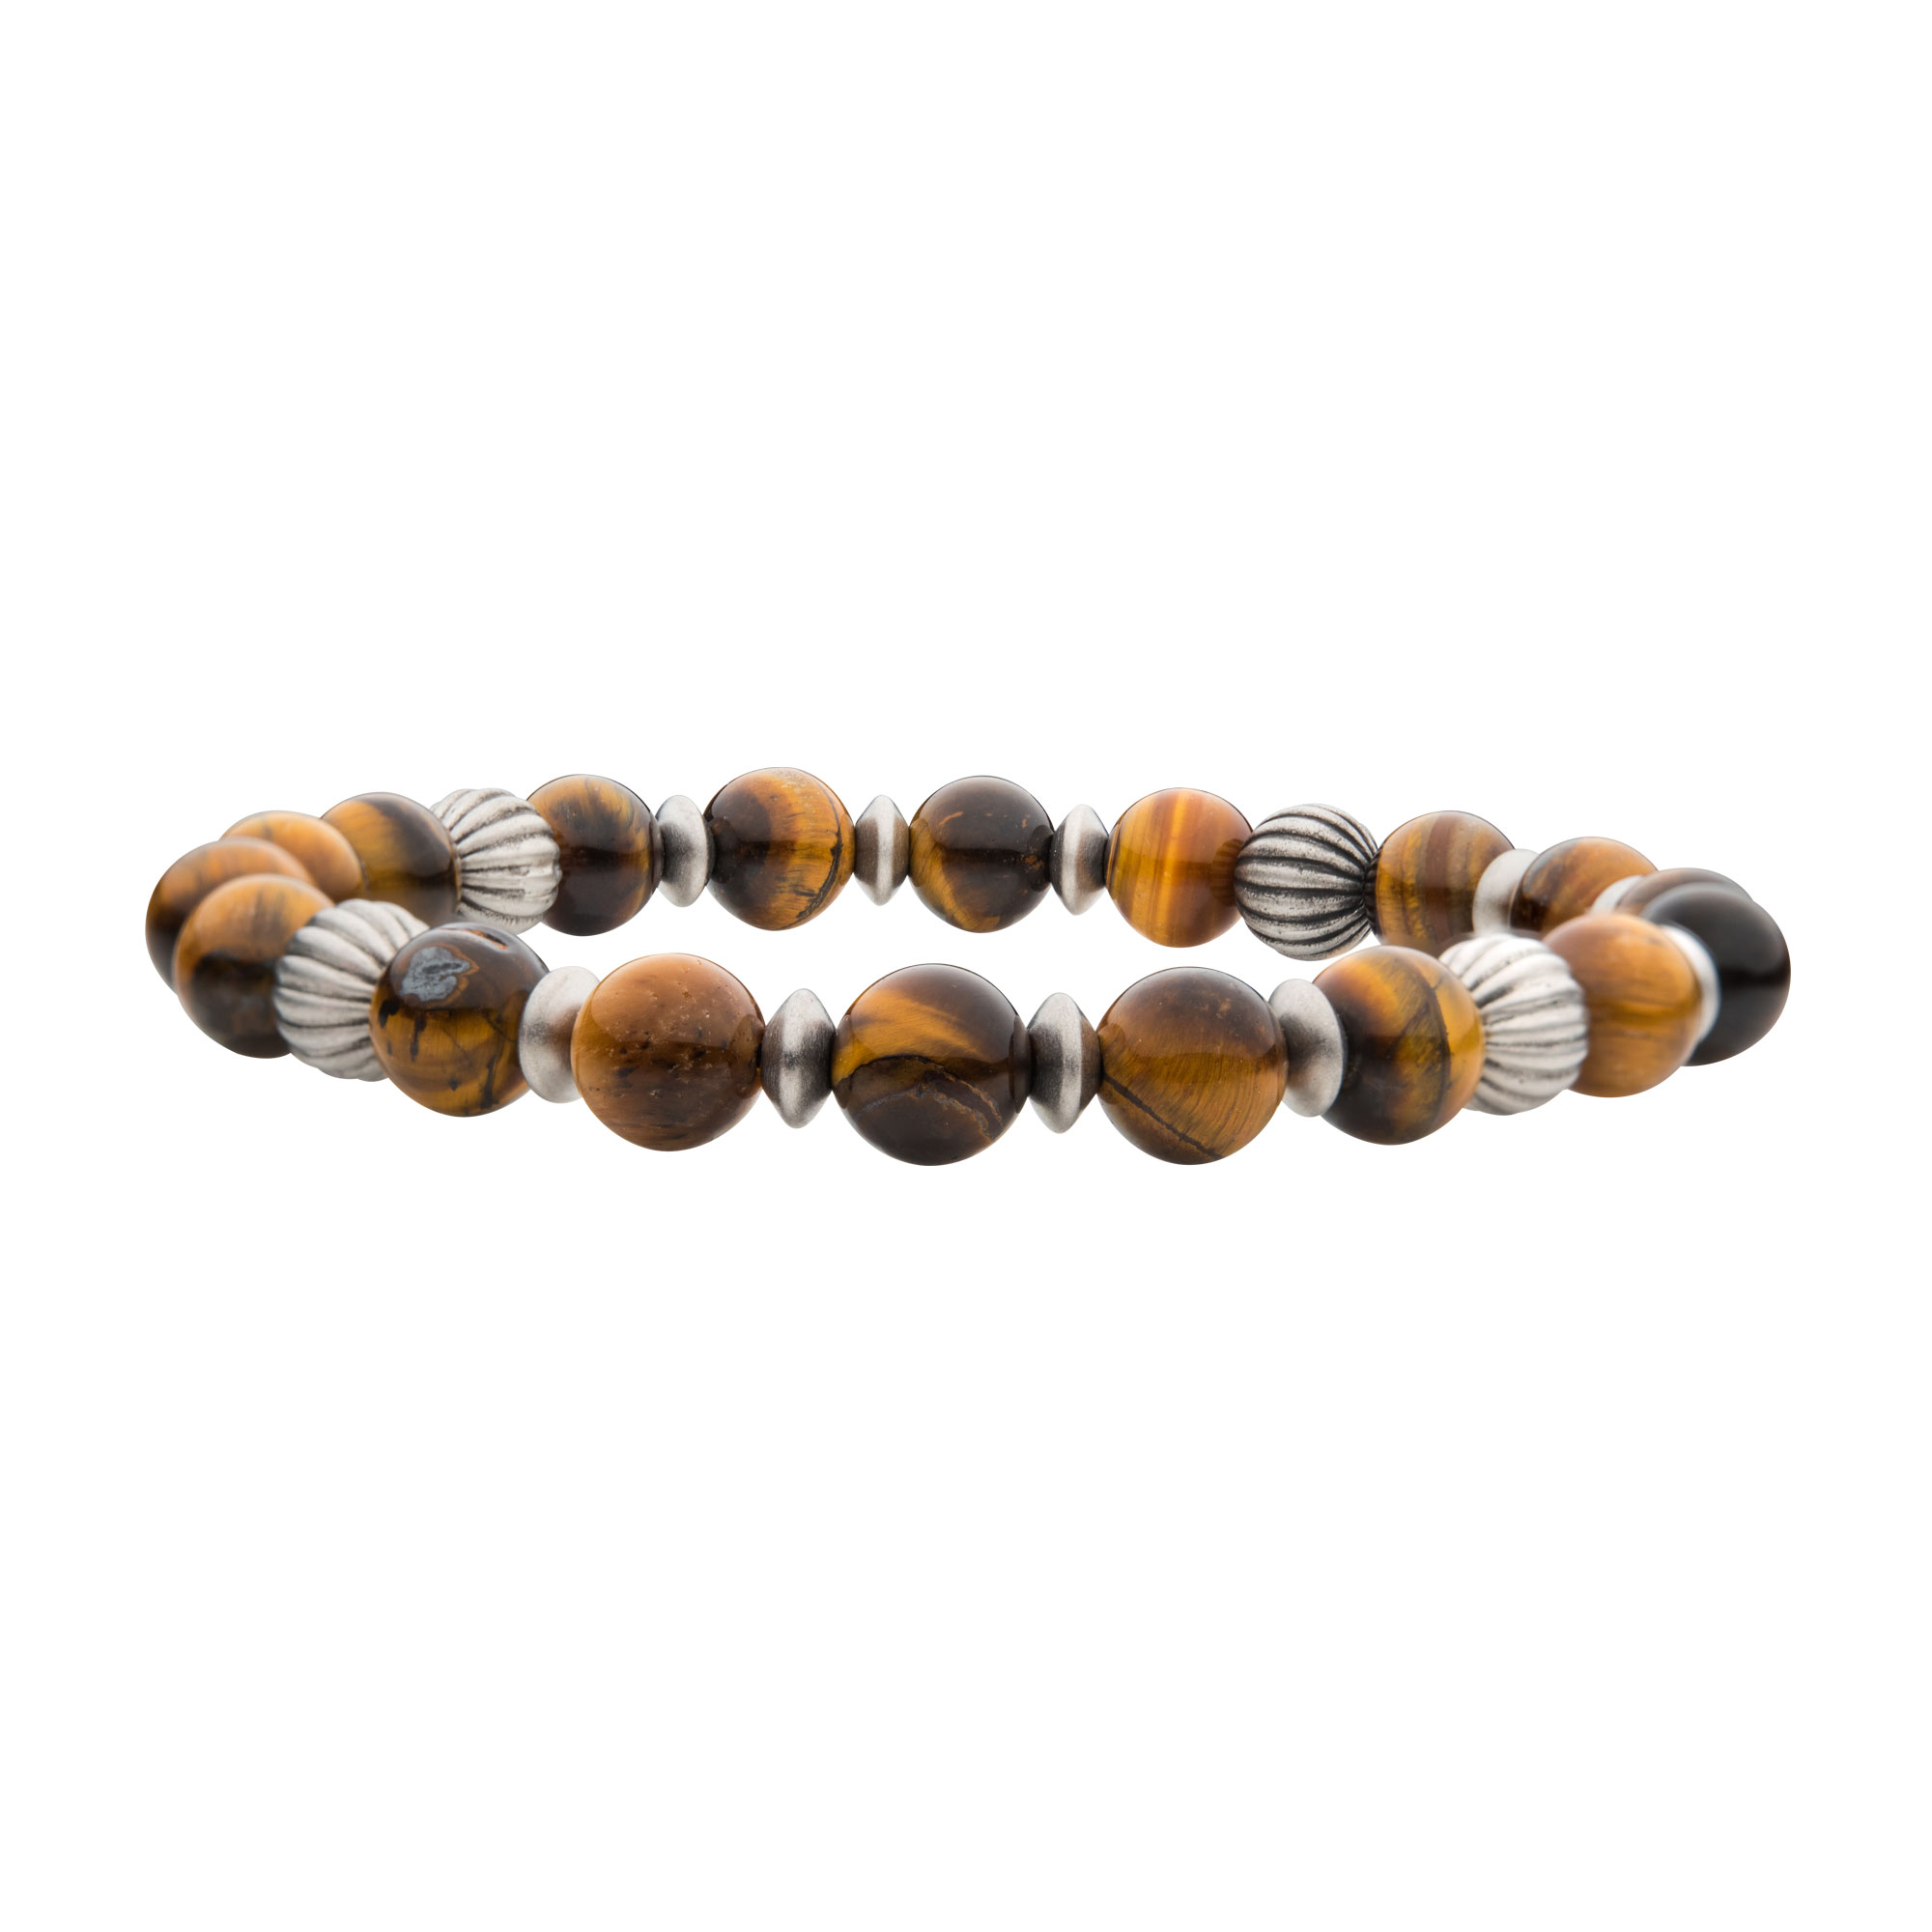 Tiger Eye Stones with Black Oxidized Beads Bracelet Glatz Jewelry Aliquippa, PA